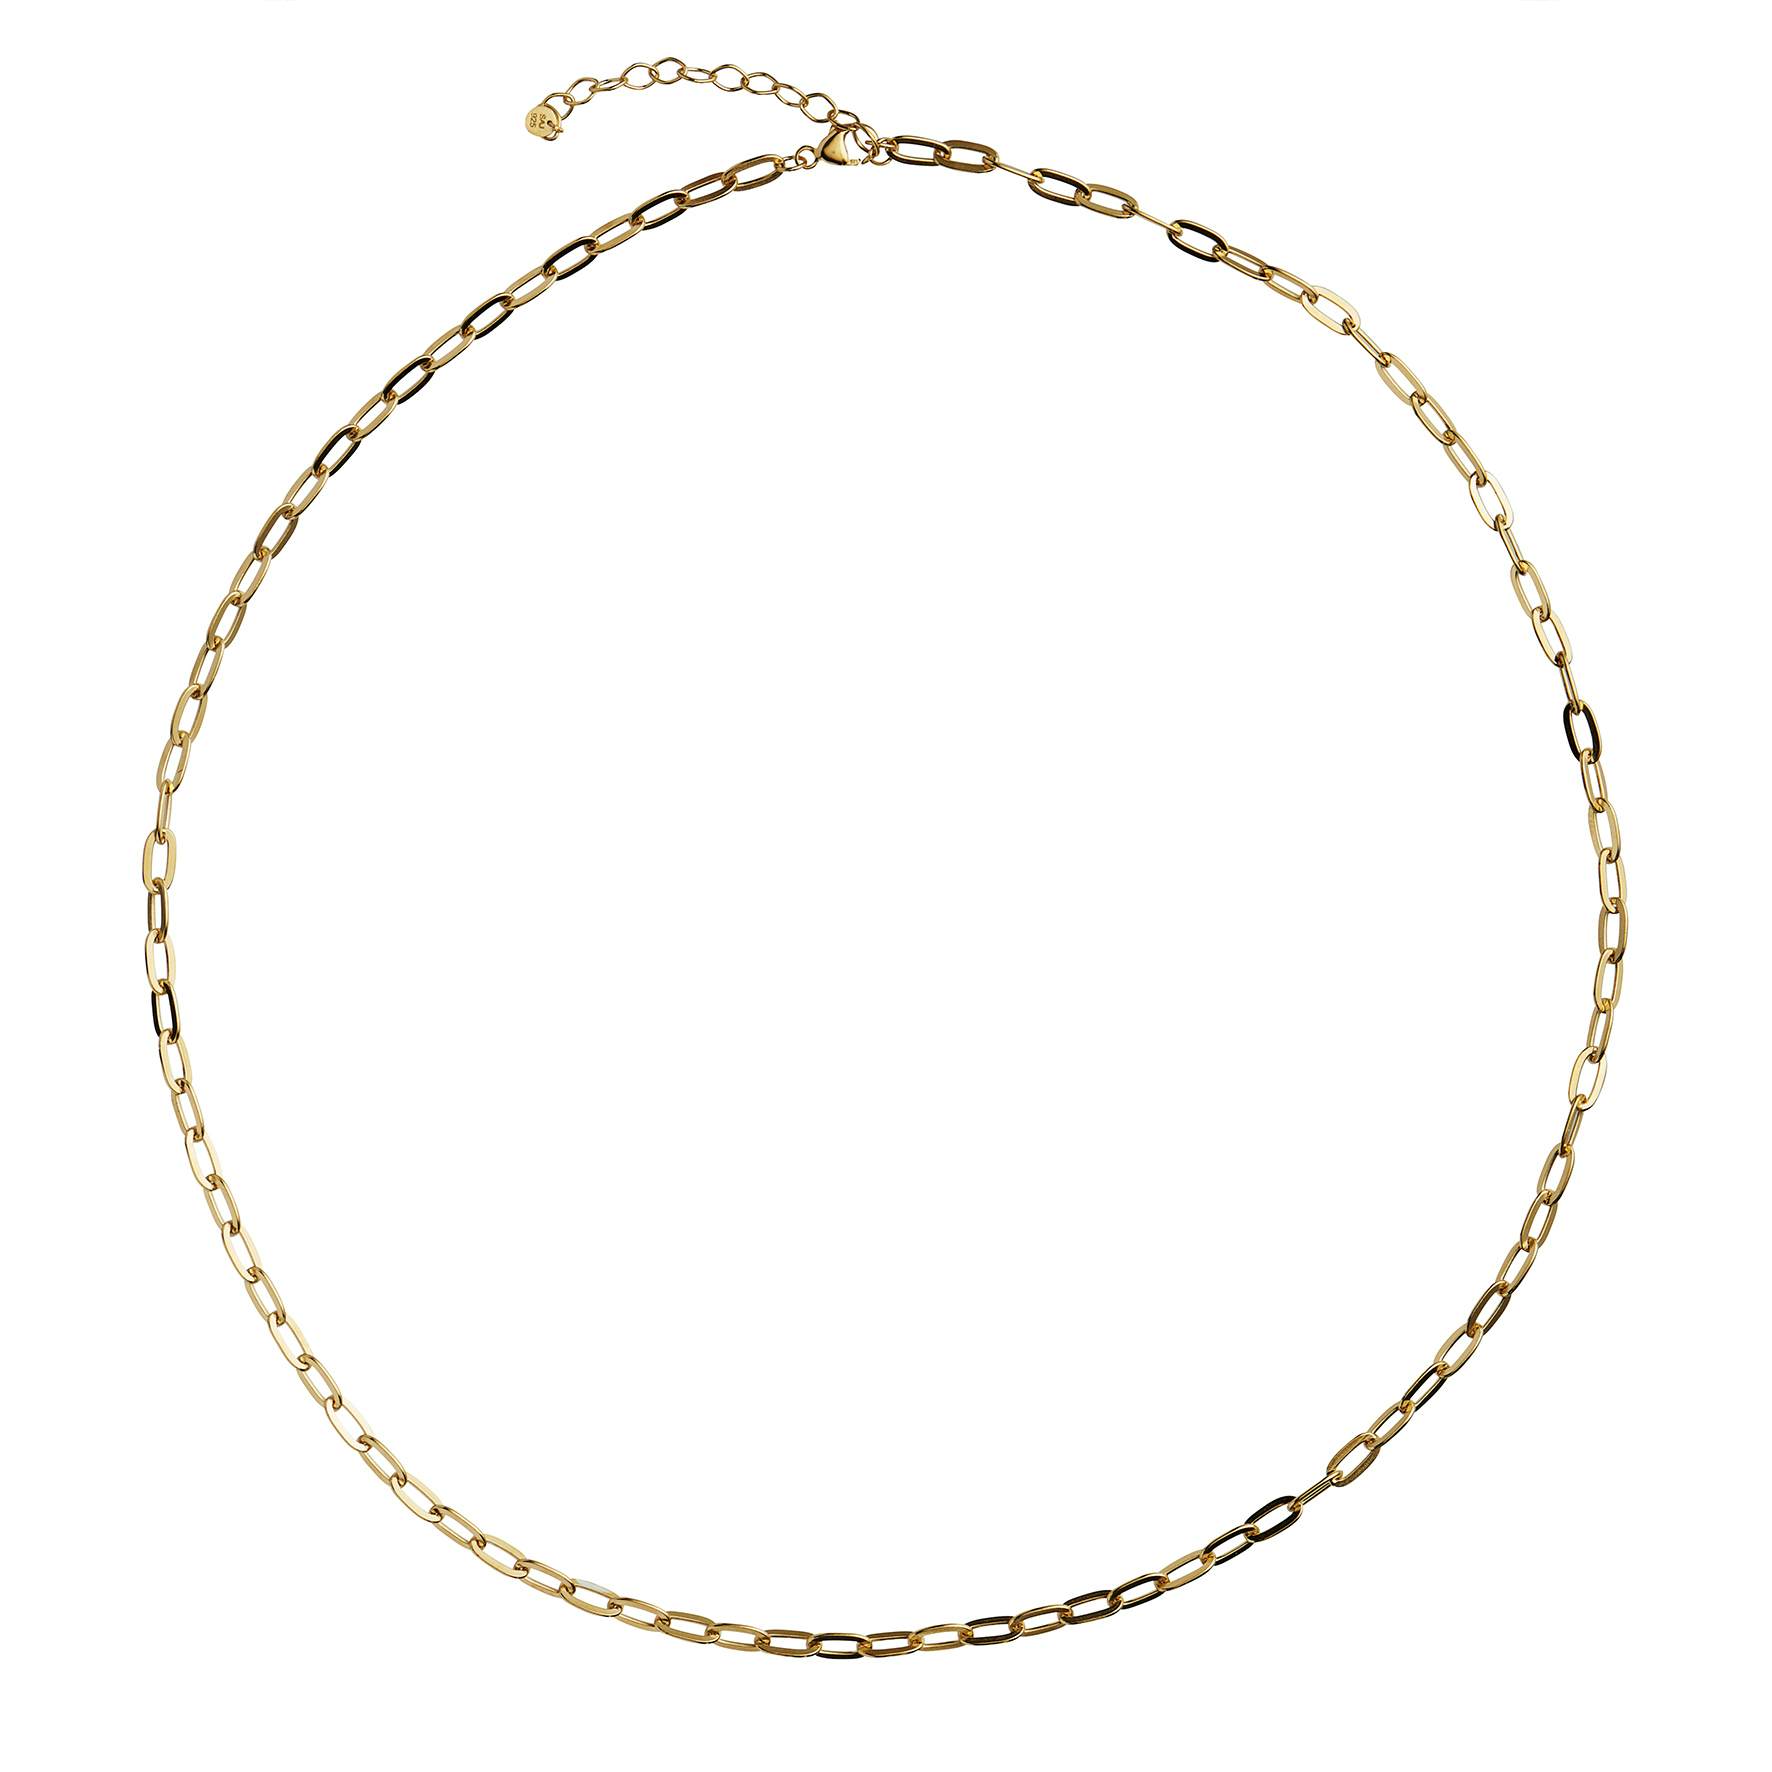 Chunky Pendant Chain fra STINE A Jewelry i Forgyldt-Sølv Sterling 925